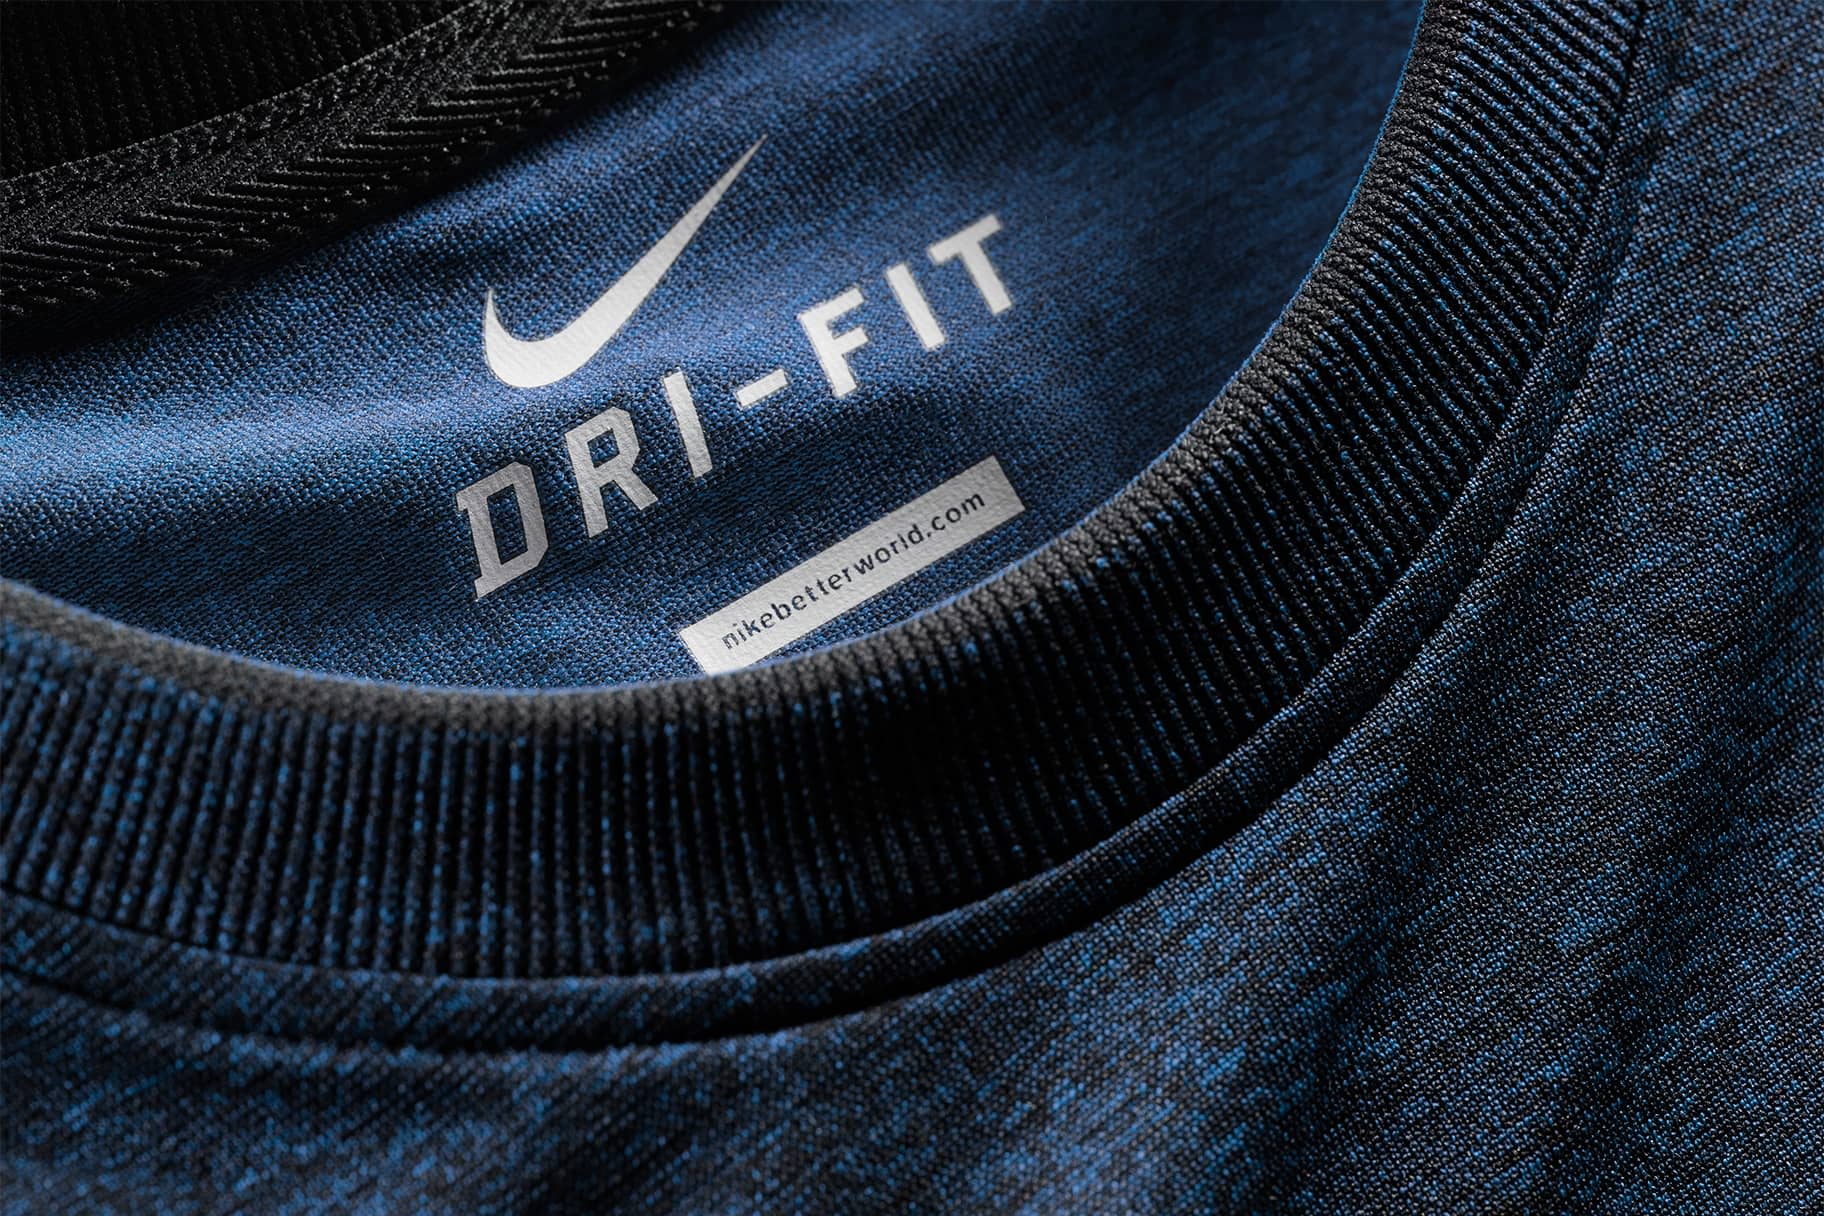 Les millors samarretes d'entrenament Nike